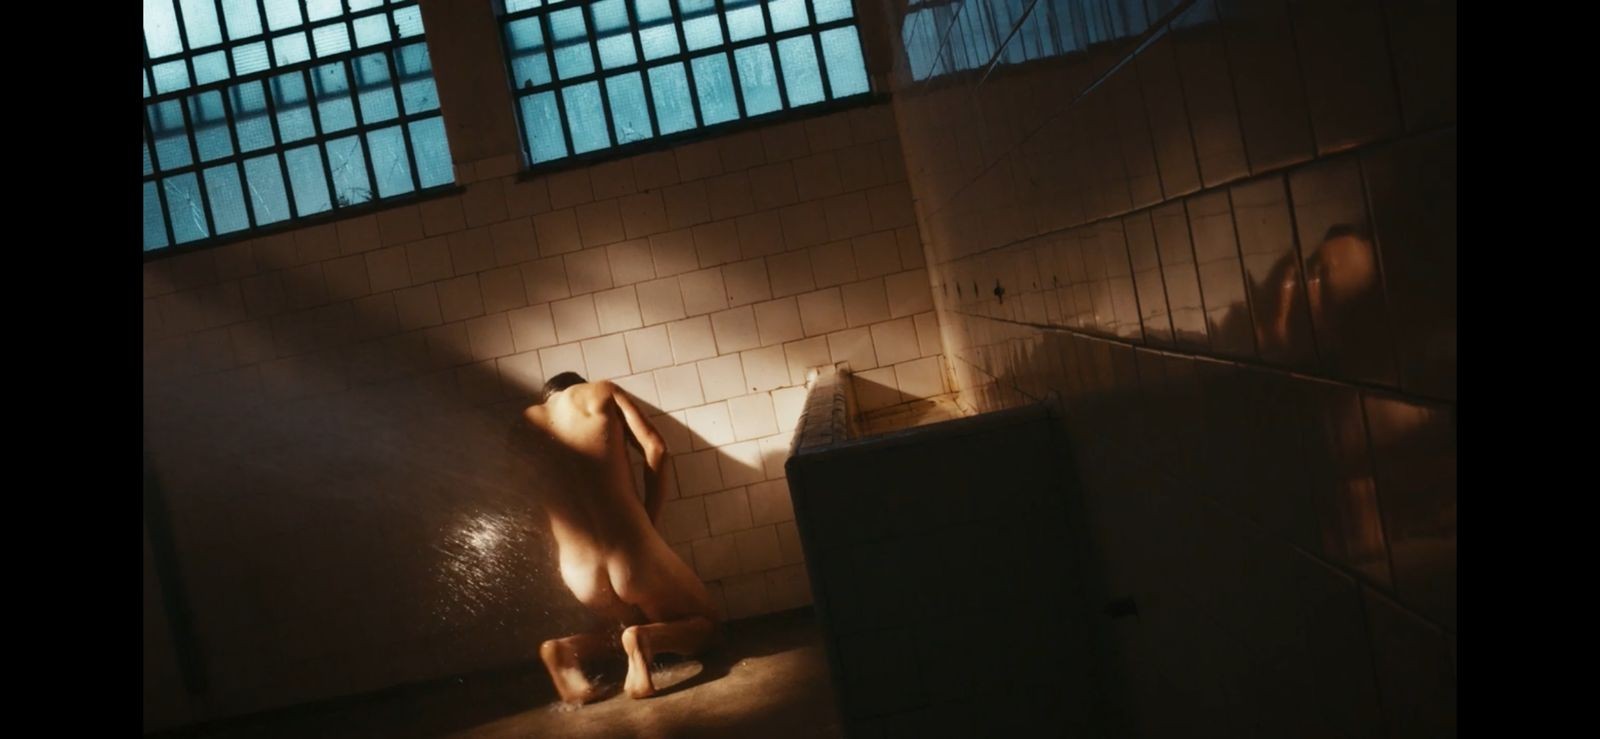 Diego, personagem de Nicolas Prattes, aparece nu em cena de banho na prisão no terceiro capítulo. Ele vai para a cadeia por um crime que não cometeu— Foto: Reprodução/TV Globo